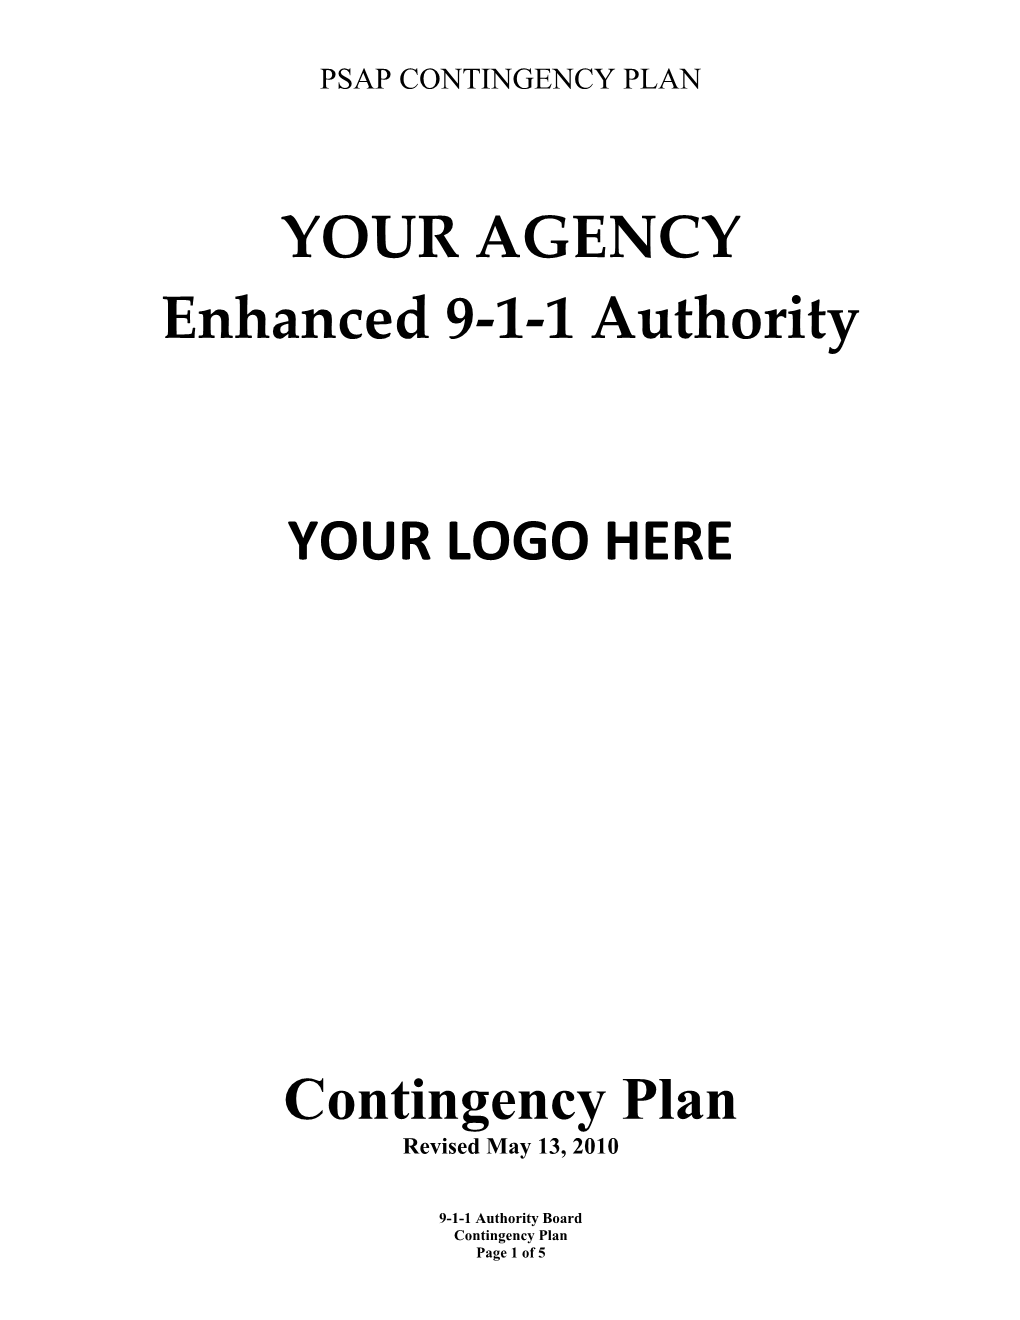 Enhanced 9-1-1 Authority